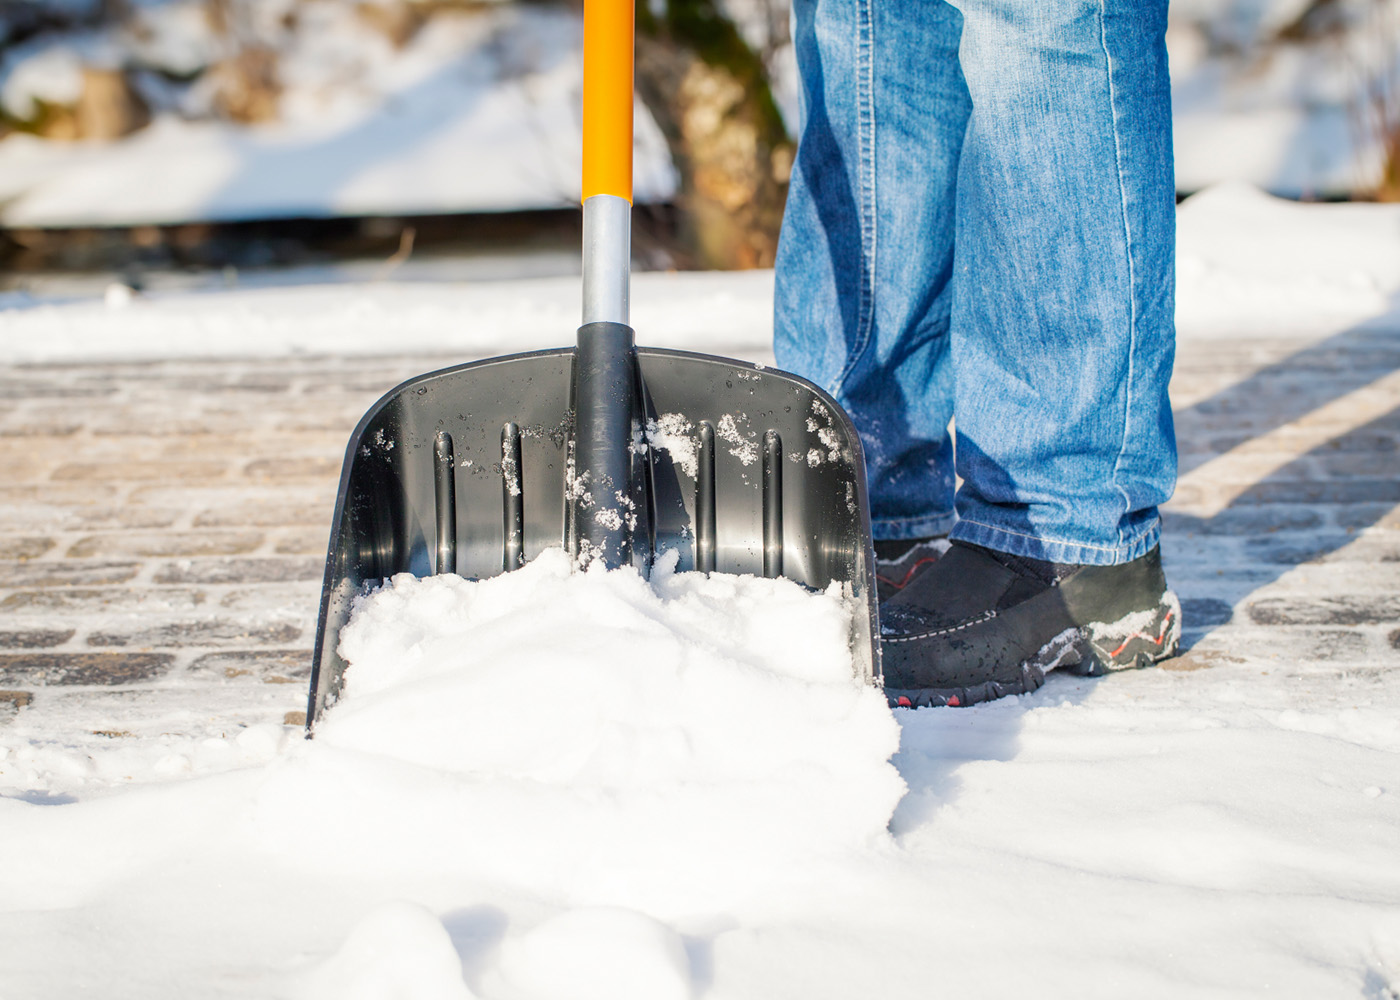 Очиститься снега. Расчистка снега лопатой. Лопата для снега. Зимние лопаты для уборки снега. Уборка тротуара лопатой.